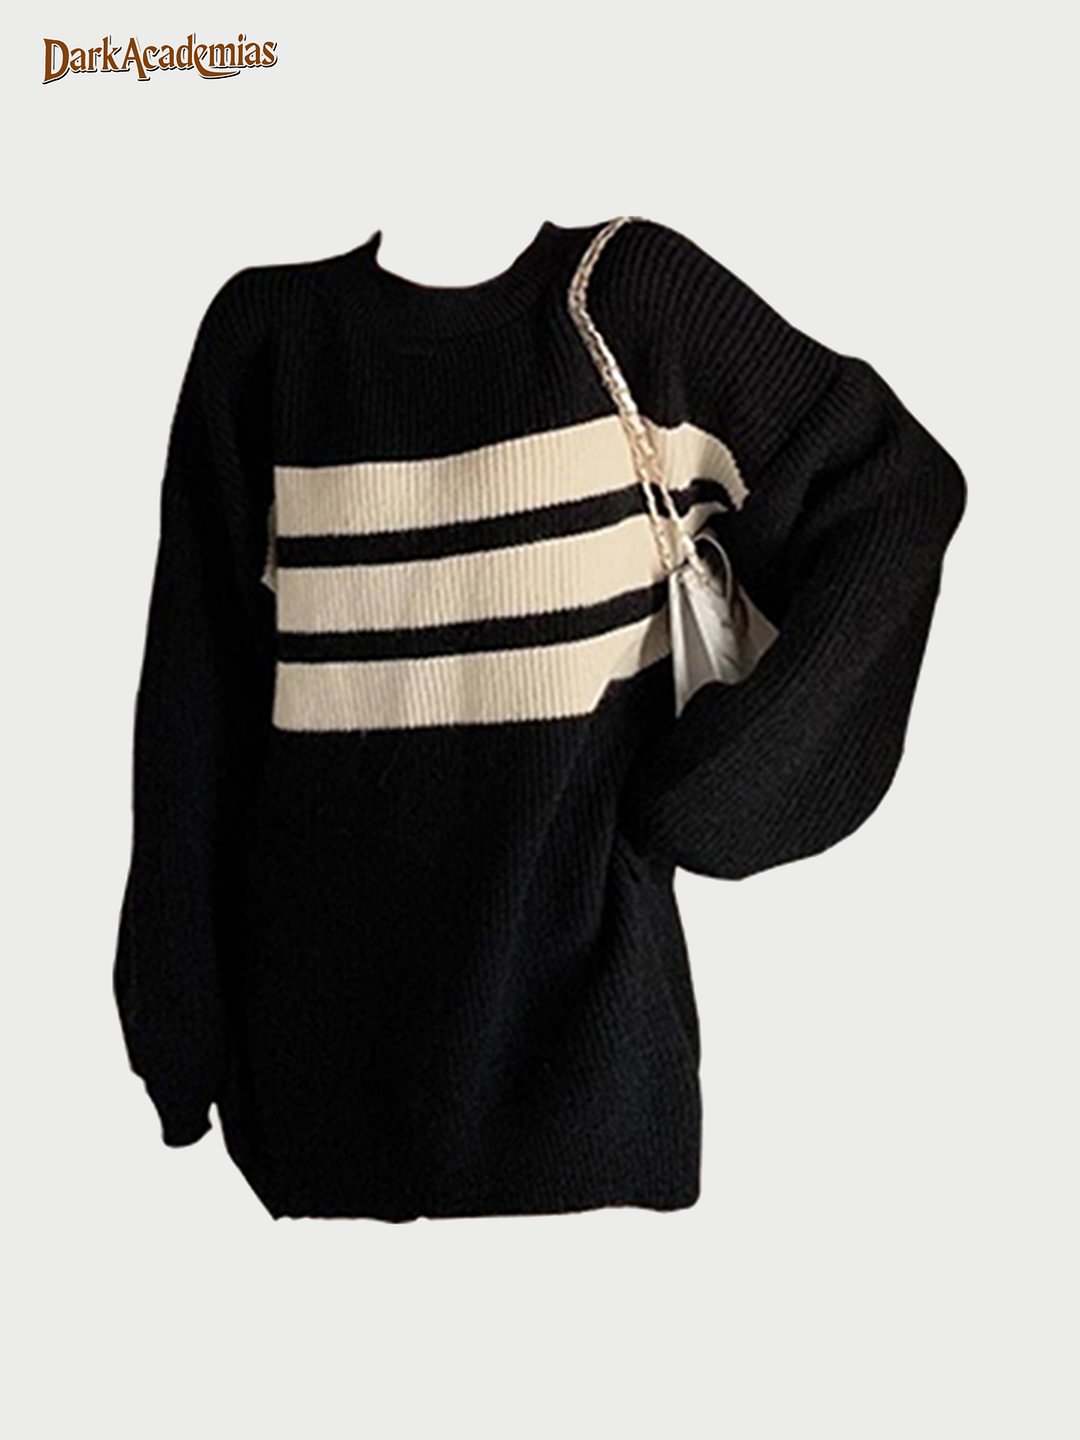 Darkacademias Black Striped Sweater